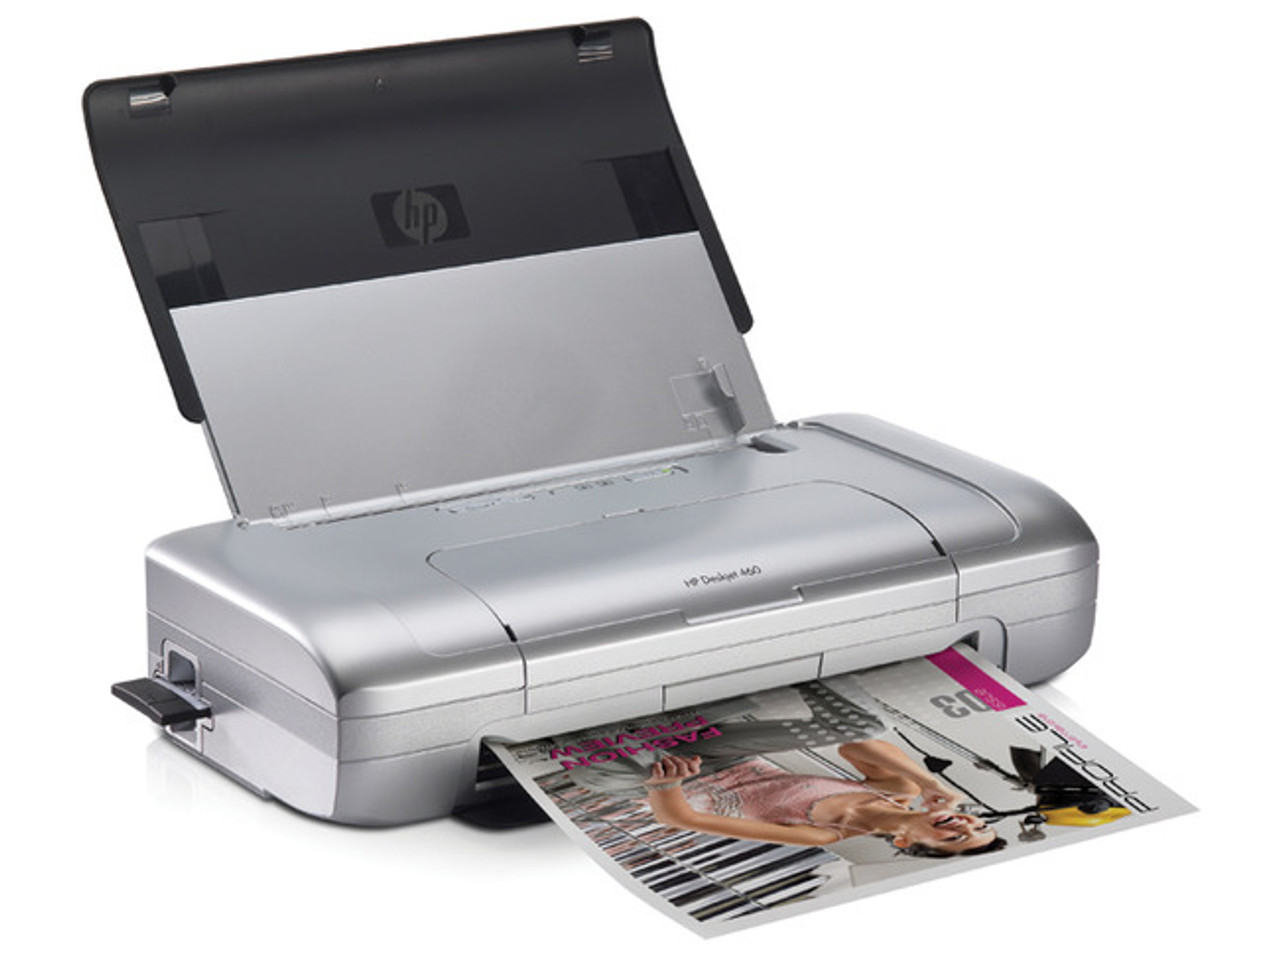 Printer HP Deskjet 460c